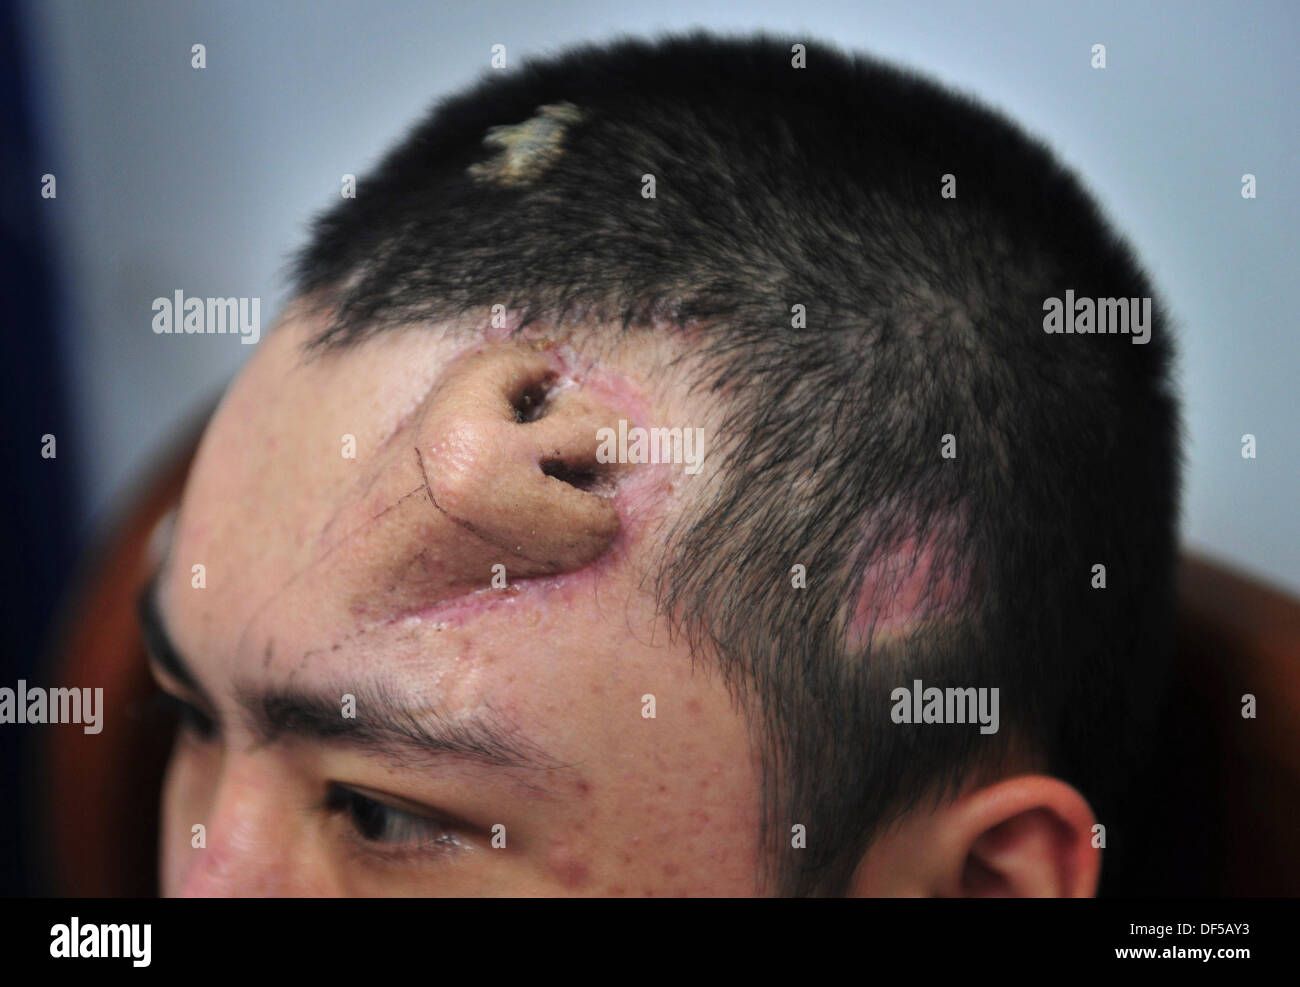 Un paciente de 22 años con una nariz injertada en la frente y que fue creada por médicos a partir de cartílago de su costilla, el 24 de septiembre de 2013 en el Hospital Unión de la Universidad Médica Fujian, en Fuzhou, China. Los médicos crearon la nariz extra para un trasplante, el primero en su tipo. (Foto AP)  CHINA OUT Stock Photo